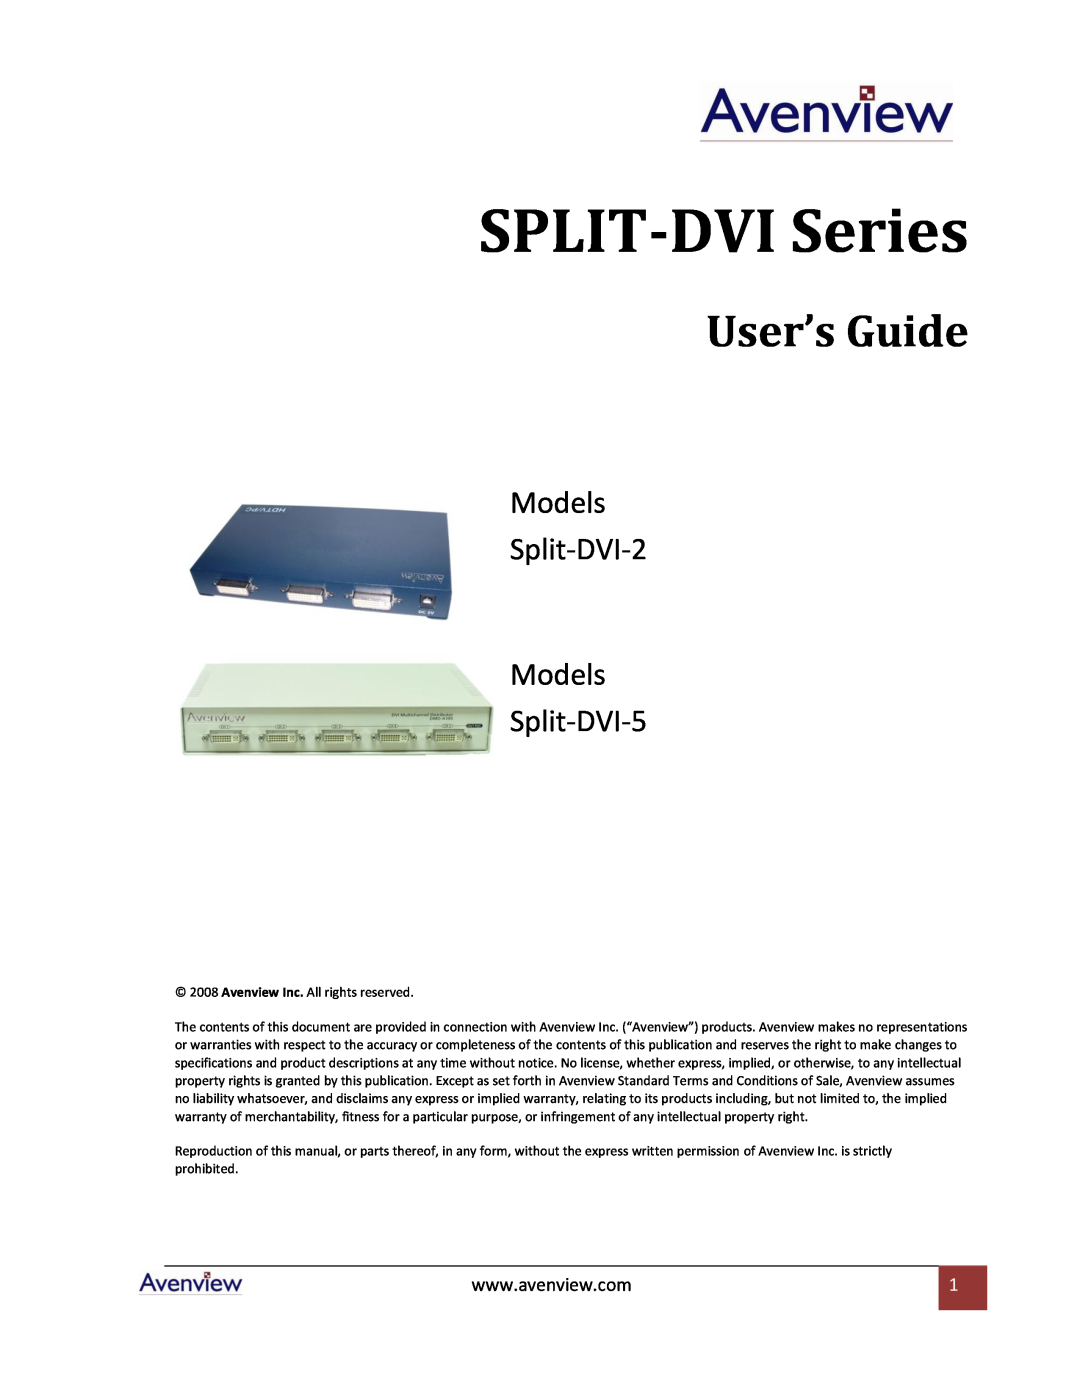 Avenview SPLIT-DVI-5, SPLIT-DVI-2 specifications SPLIT-DVI Series, User’s Guide, Models Split-DVI-2 Models Split-DVI-5 